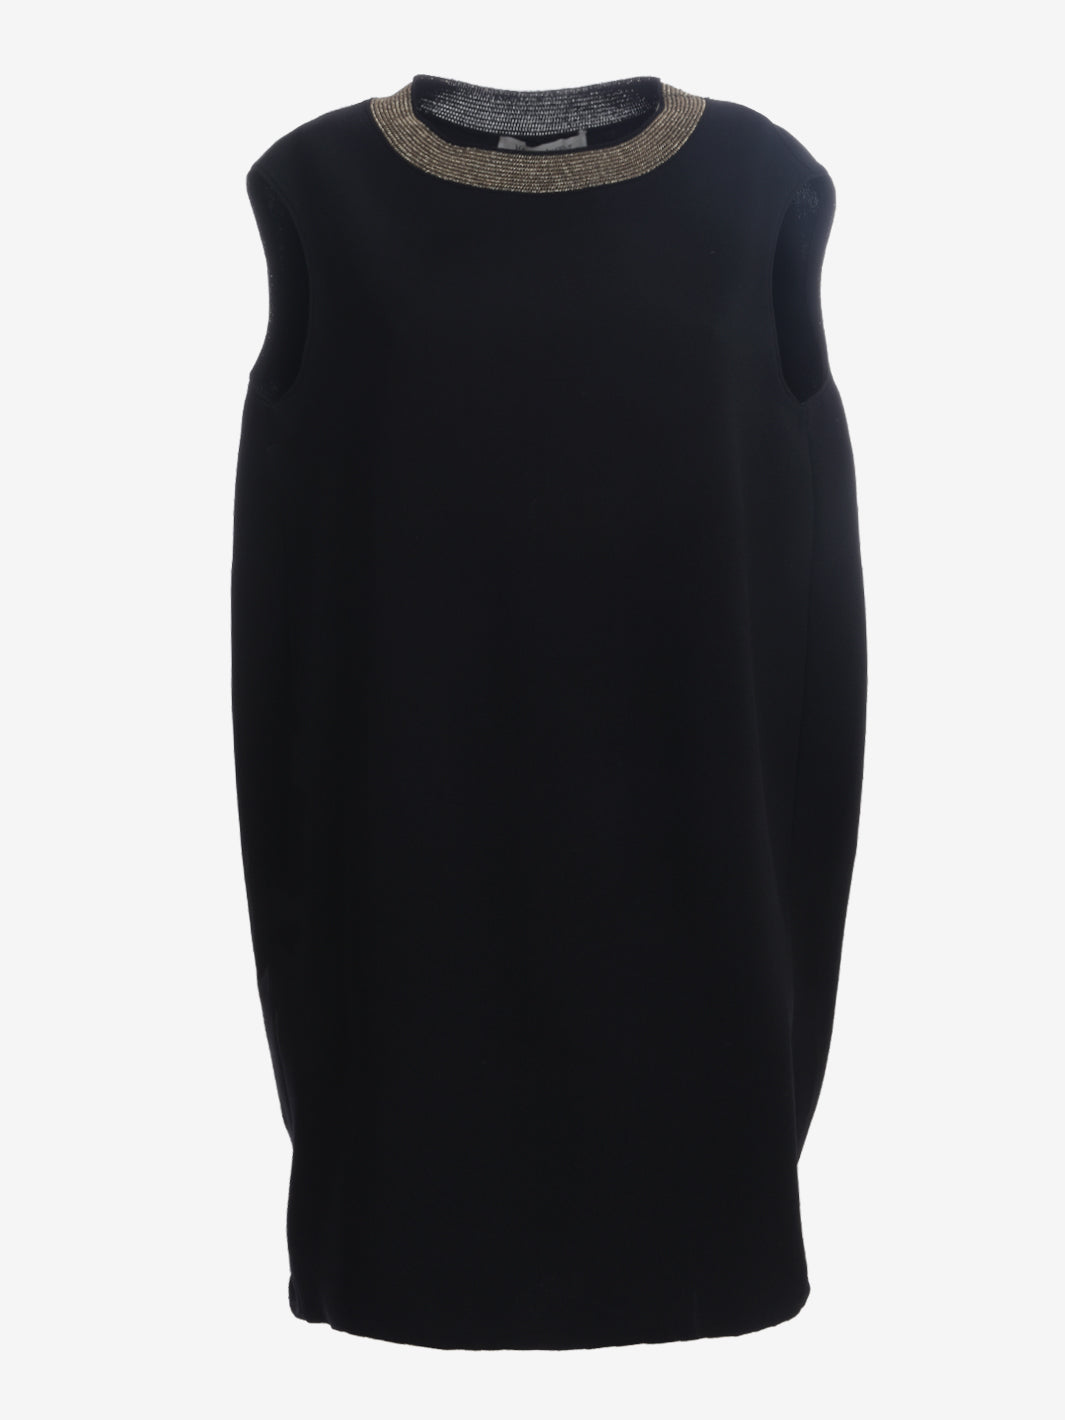 Yves Saint Laurent Oversize Dress - FW12